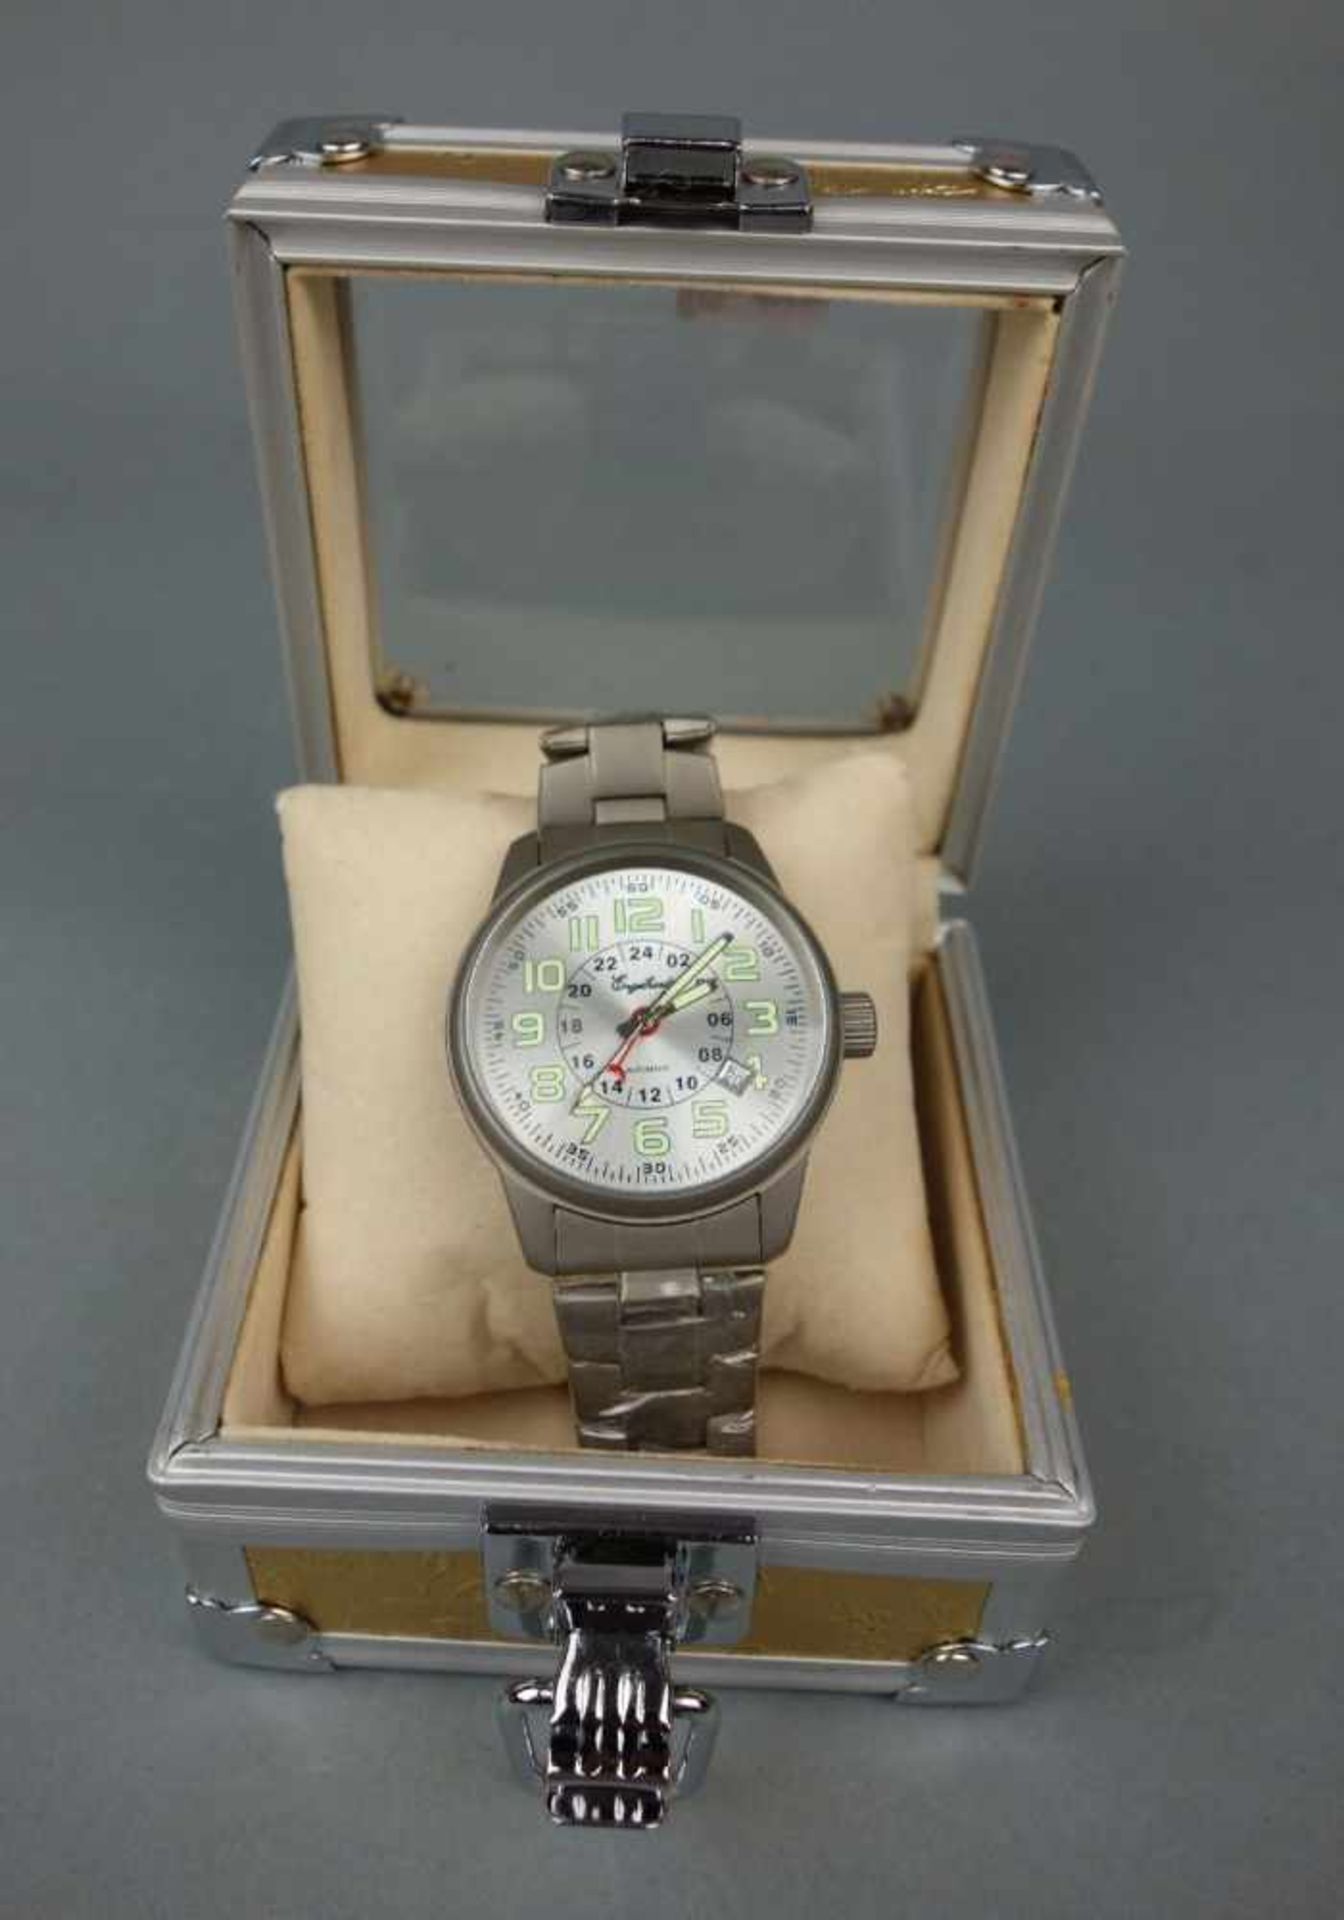 NEUWERTIGE ENGELHARDT ARMBANDUHR / wristwatch, Automatik-Uhr. Rundes mattiertes Stahlgehäuse mit